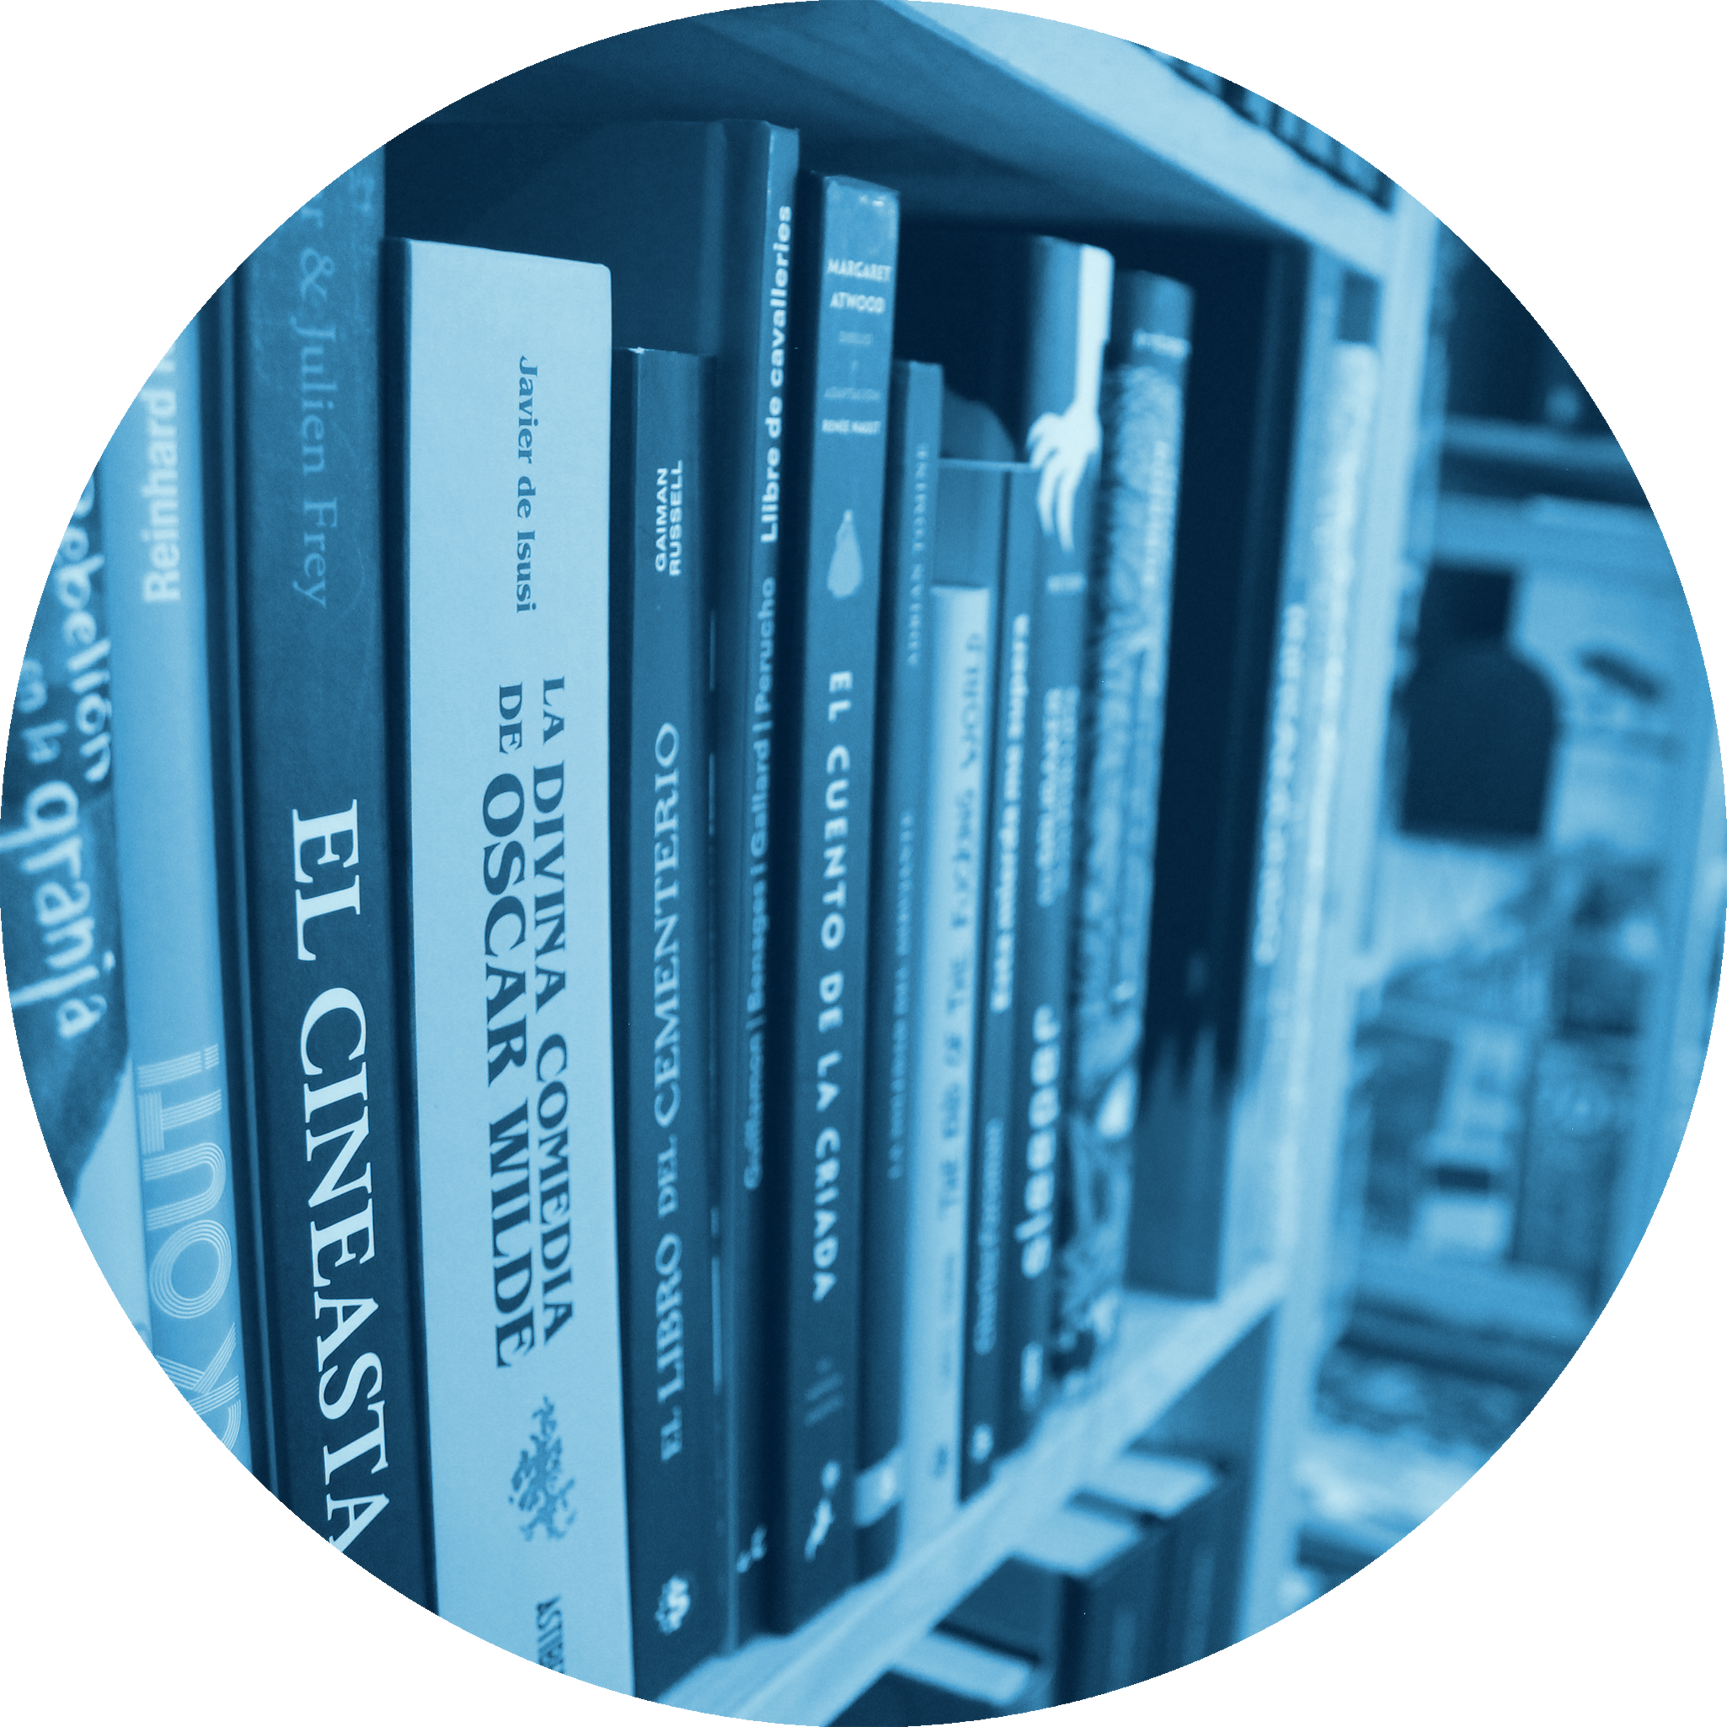 Llibres per a centres educatius, culturals o biblioteques